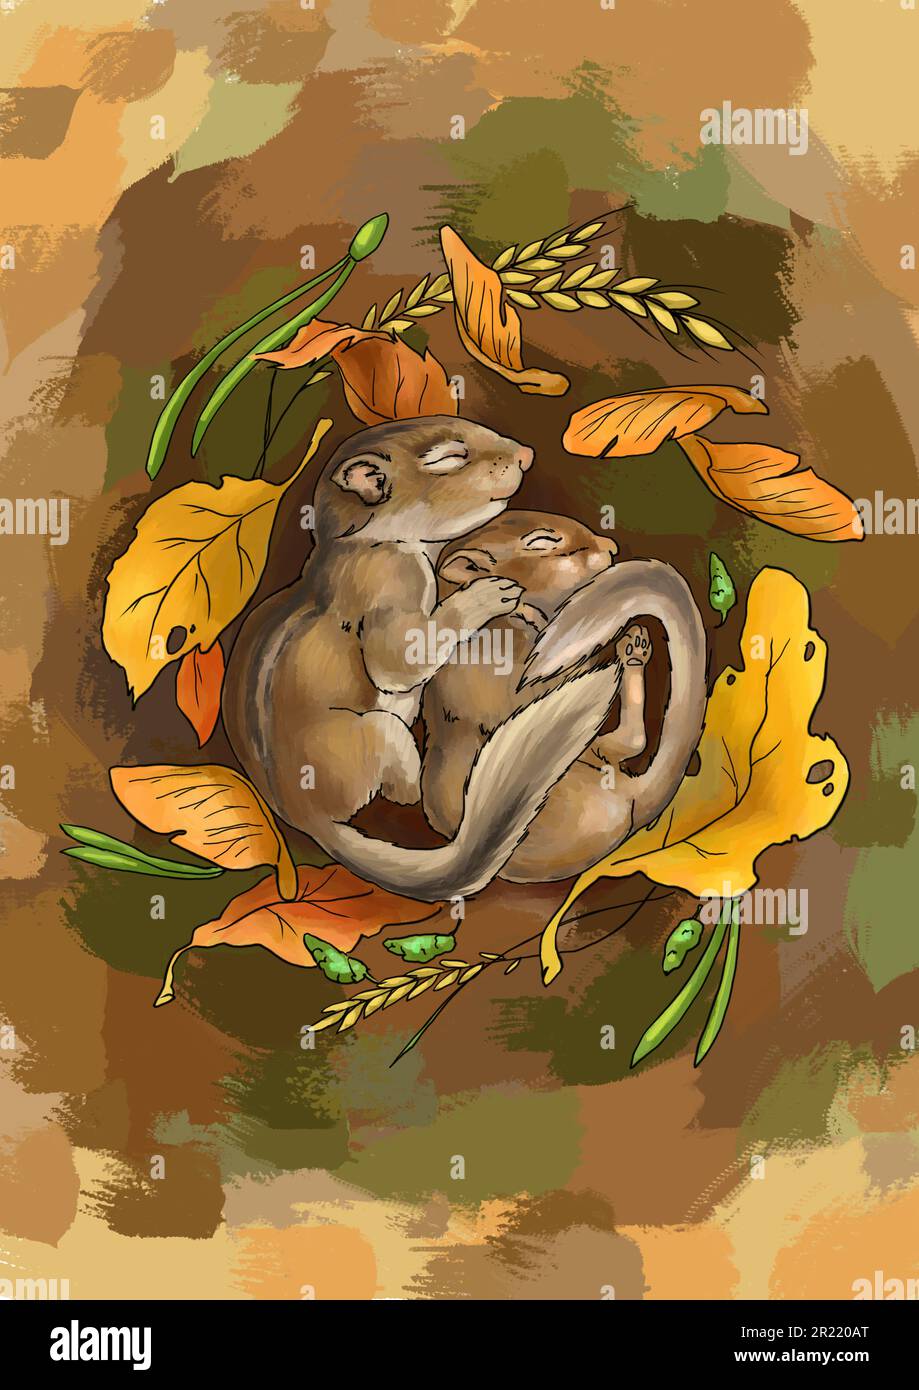 Illustrazione dei pippunks dormienti. Due piccoli cippini dormono in un mucchio di foglie. Toni autunnali. Prenota l'illustrazione dei bambini. Per la stampa su prodotti per bambini. Animali divertenti. Animali selvatici. Illustrazione di alta qualità Foto Stock